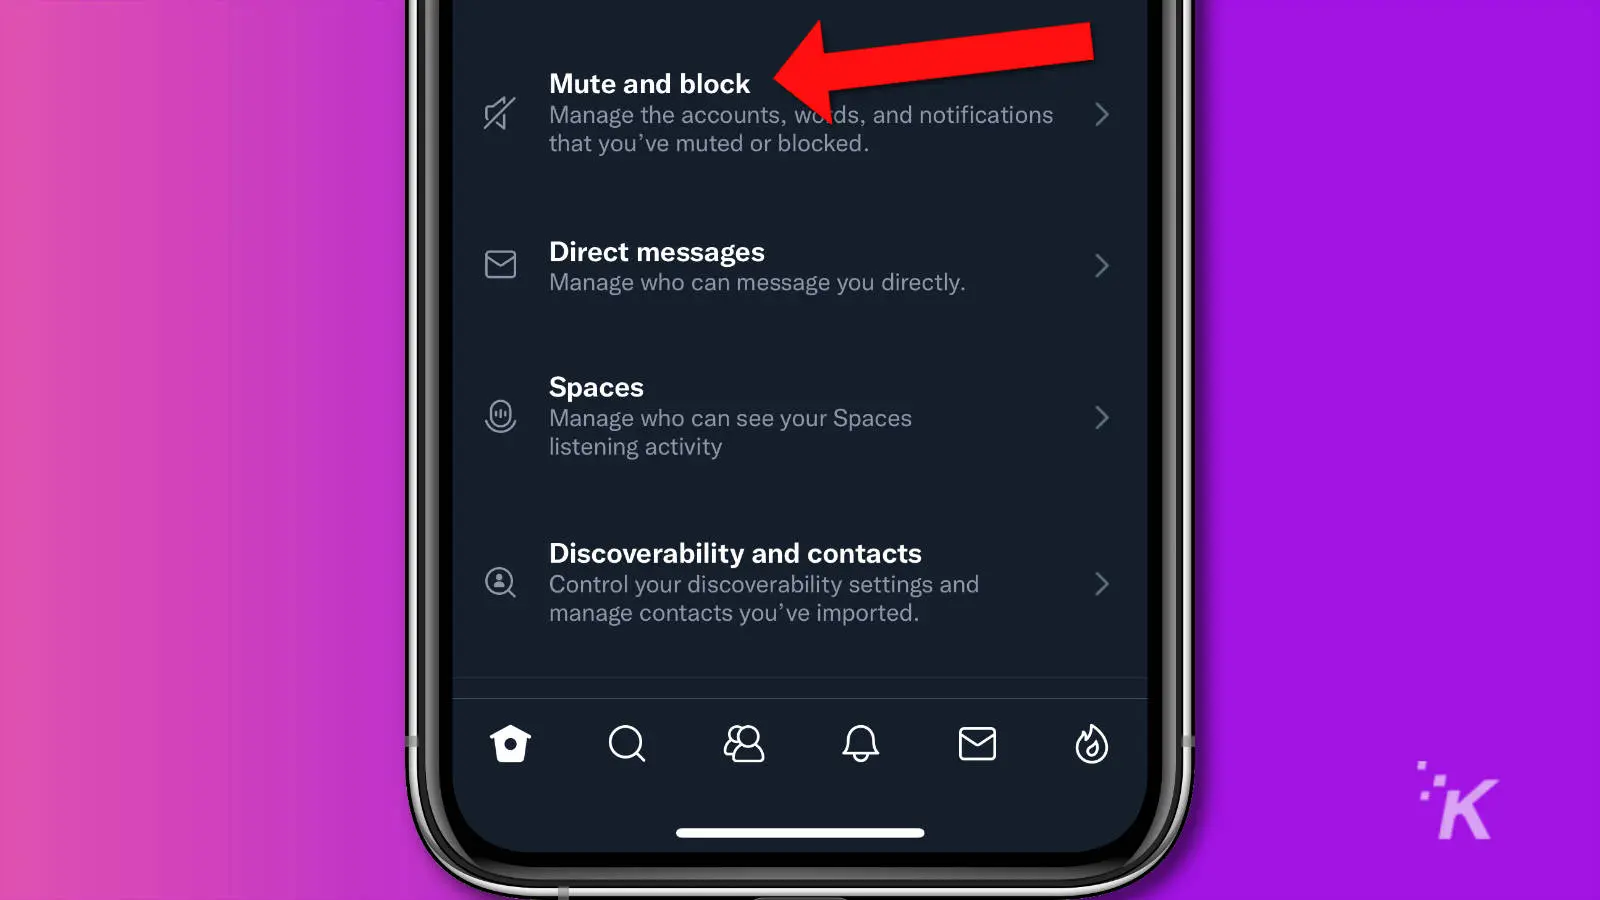 captura de pantalla de la aplicación Twitter mostrando la opción de deshabilitar y bloquear